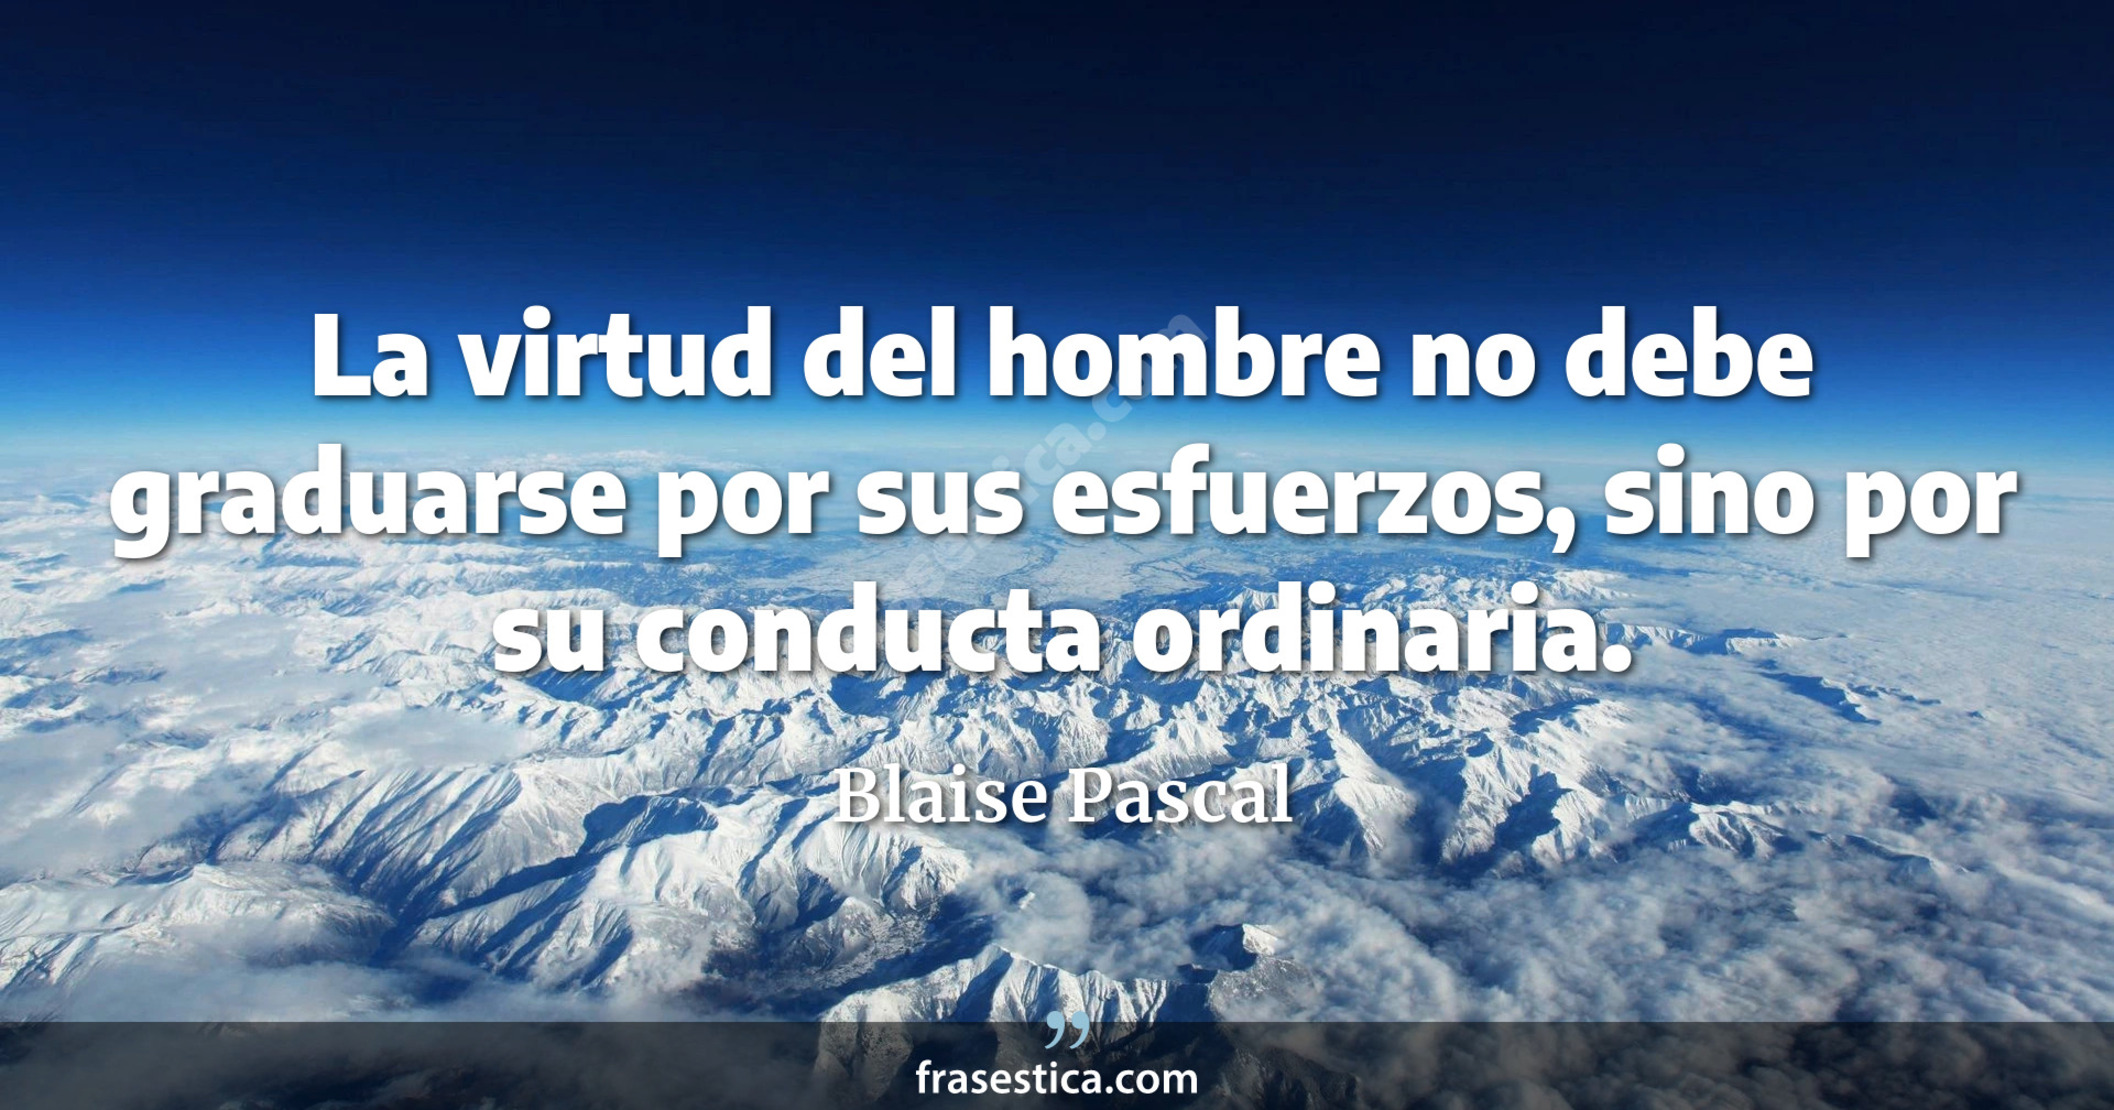 La virtud del hombre no debe graduarse por sus esfuerzos, sino por su conducta ordinaria. - Blaise Pascal